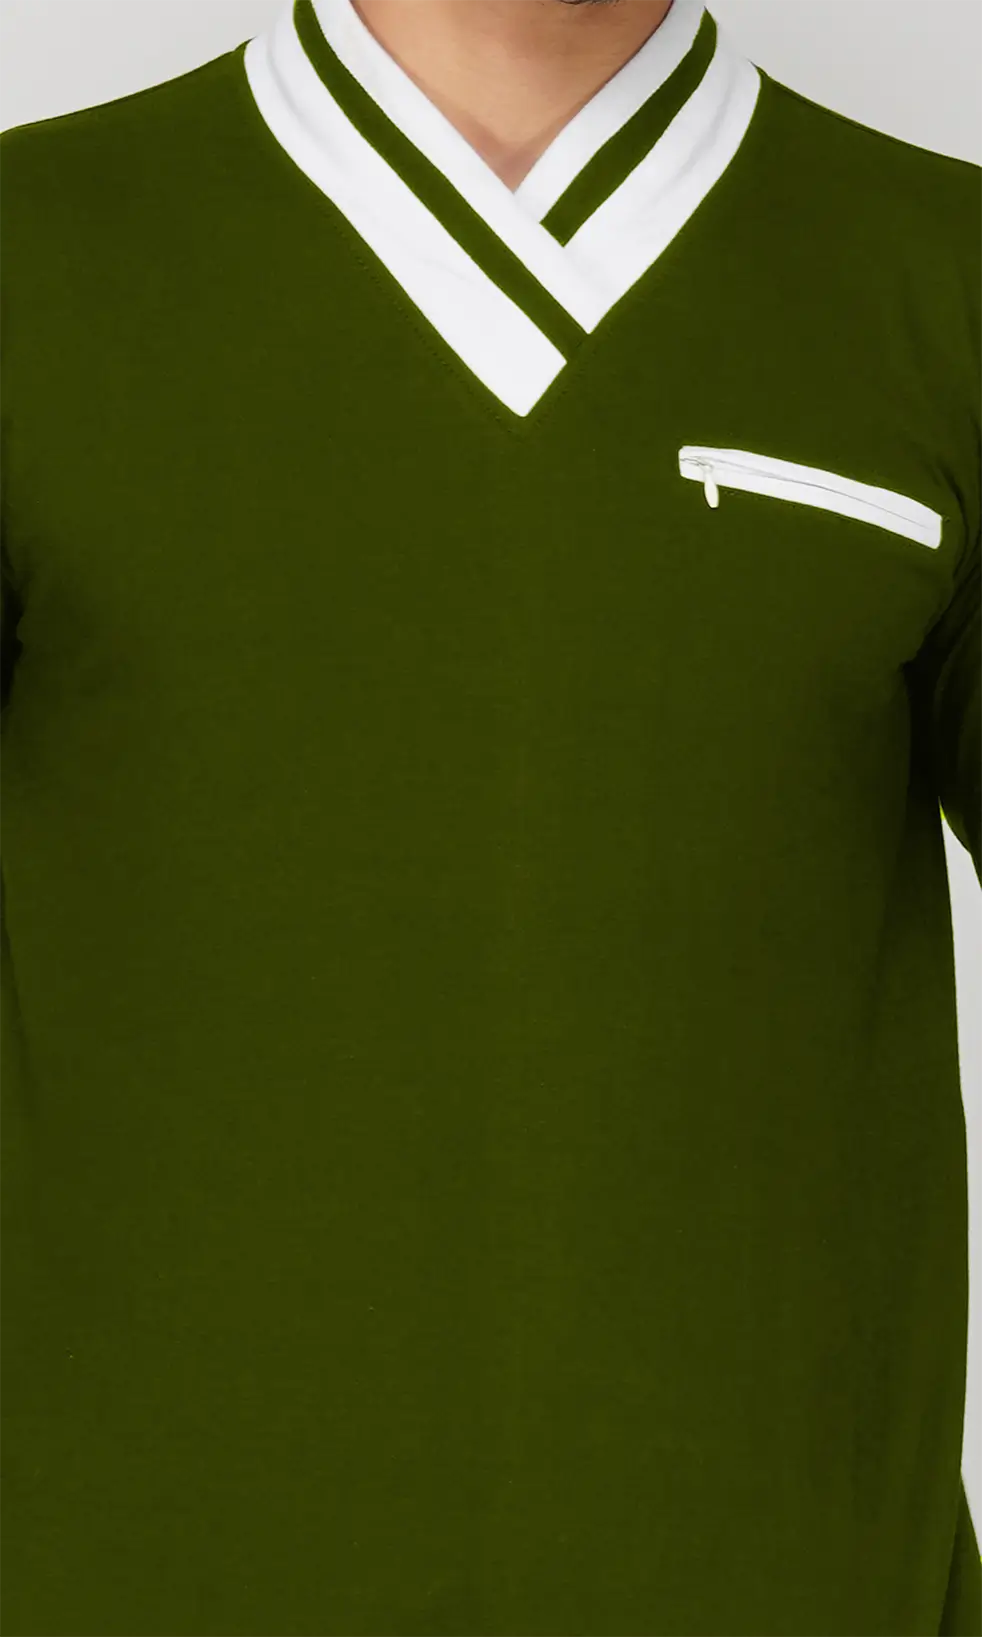 Mebadass Men's Fullsleeve Colorblocked Regular Size T-shirt - Olive White